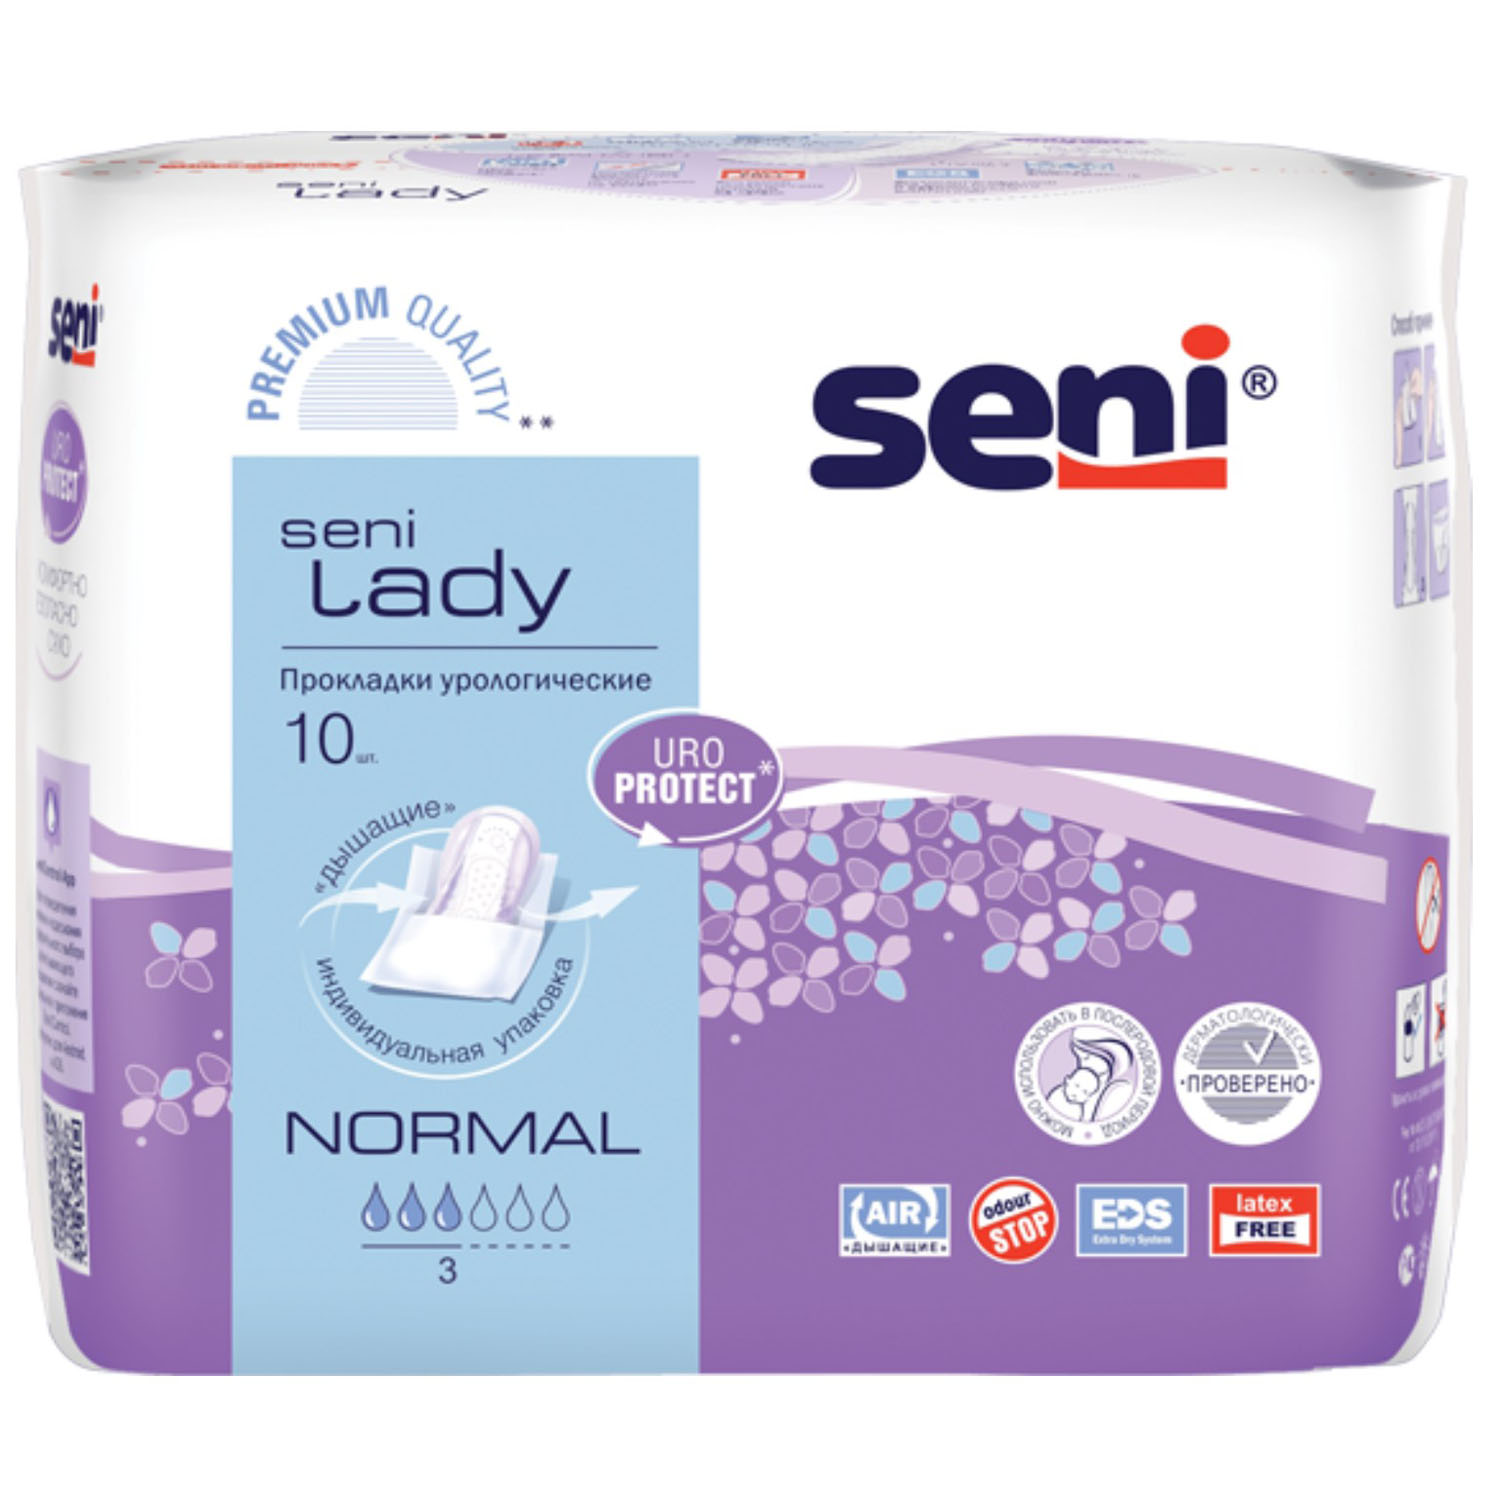 Seni Урологические прокладки для женщин Normal 10,5х28 см, 10 шт (Seni, Lady)